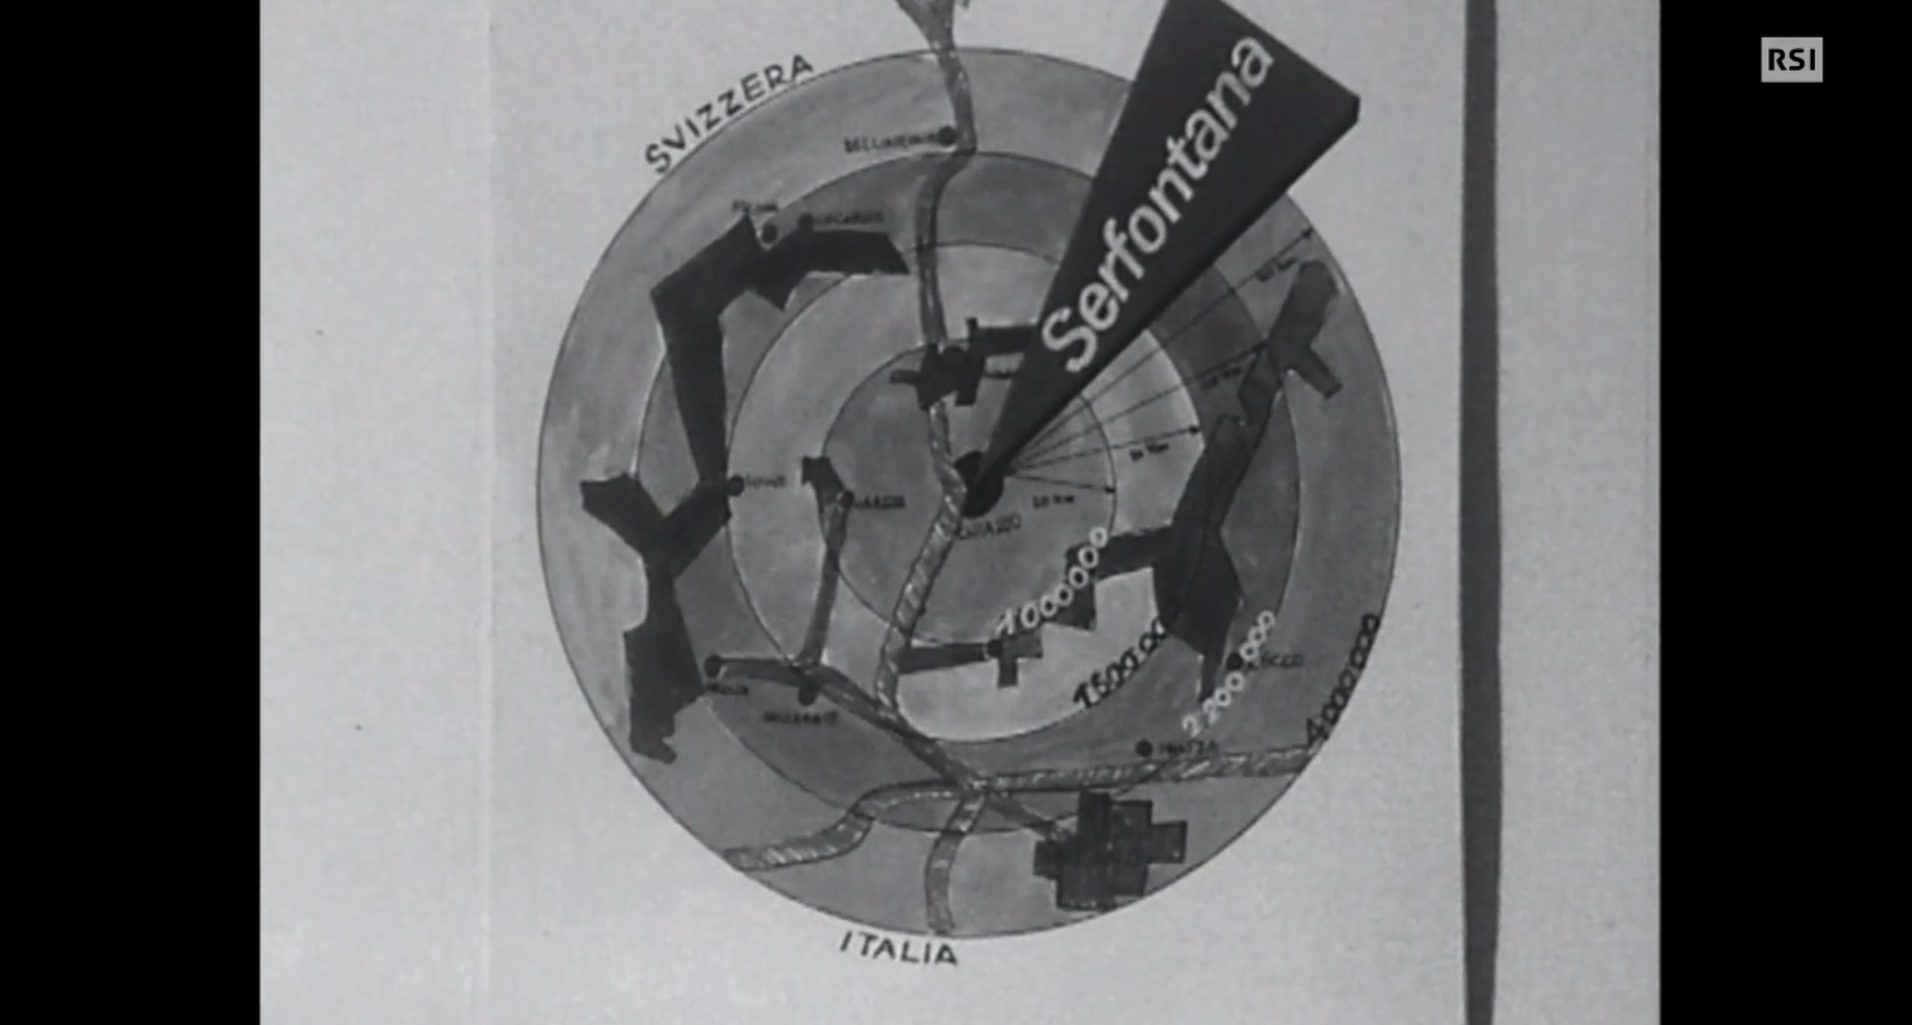 Cartina stilizzata della regione di confine Svizzera-Italia con cerchi concentrici e numero di abitanti